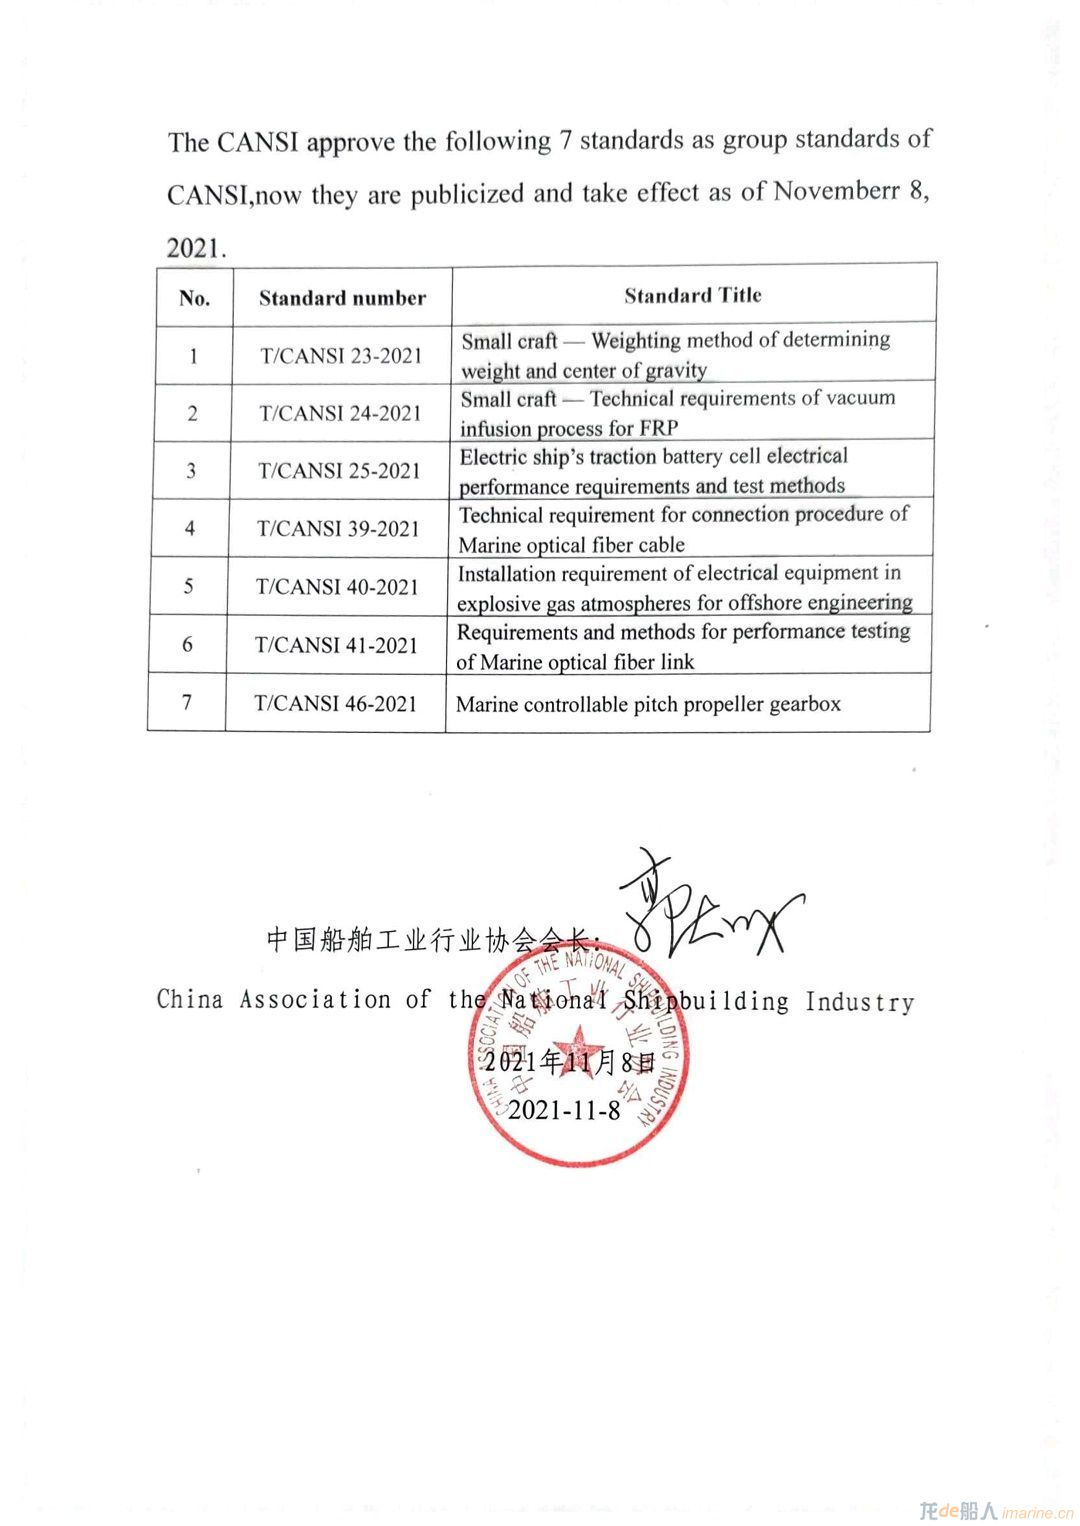 中国船舶工业行业协会团体标准公告（第六批）